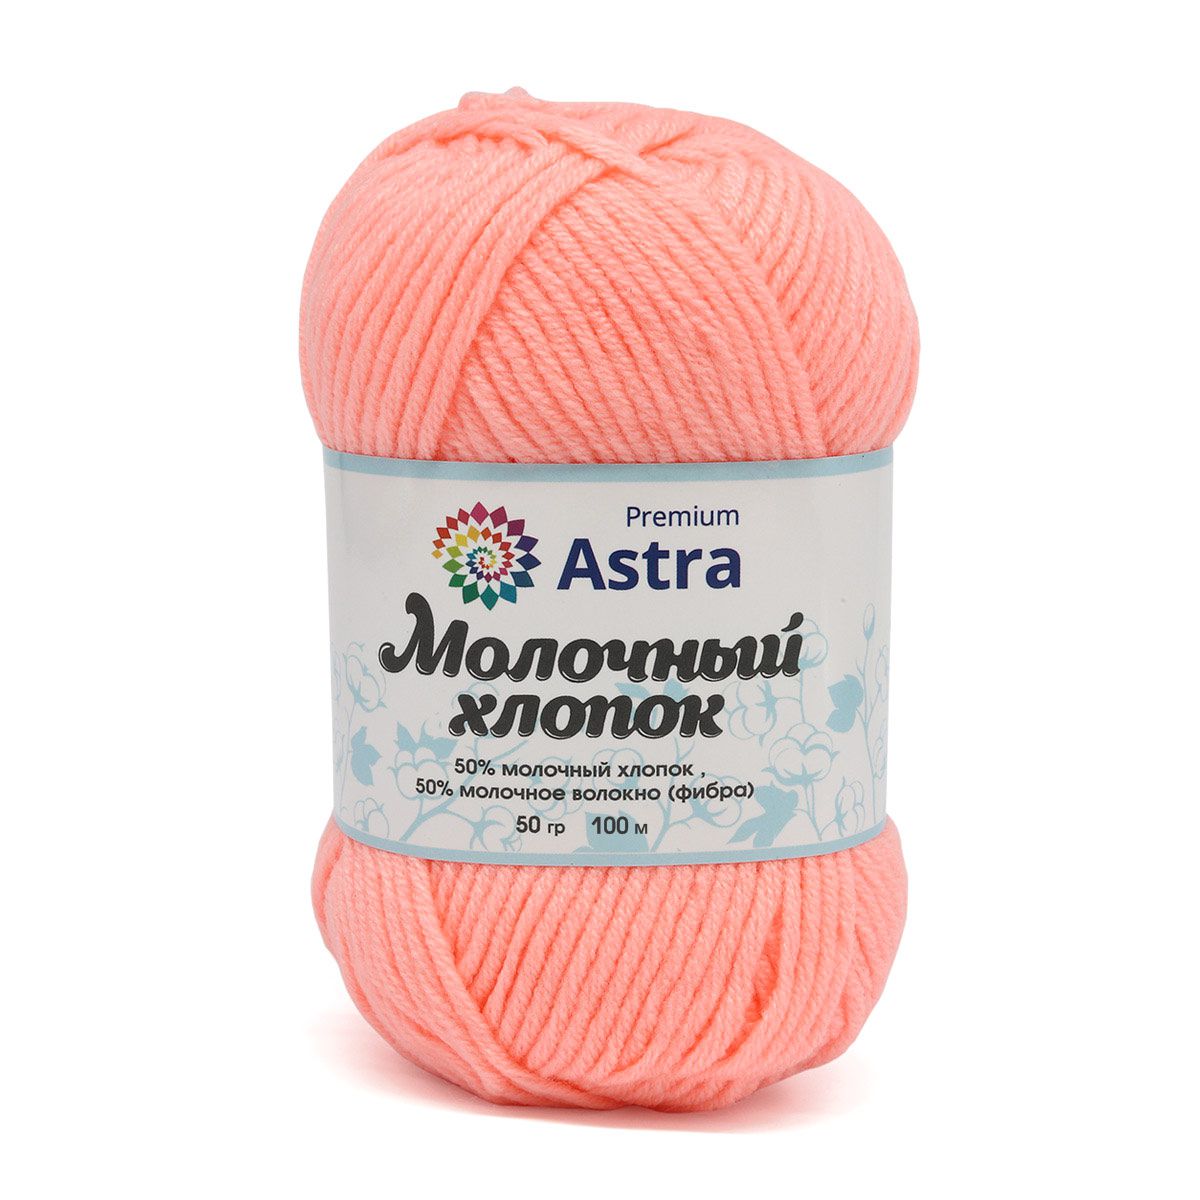 Пряжа для вязания Astra Premium milk cotton хлопок акрил 50 гр 100 м 03 светло-коралловый 3 мотка - фото 10